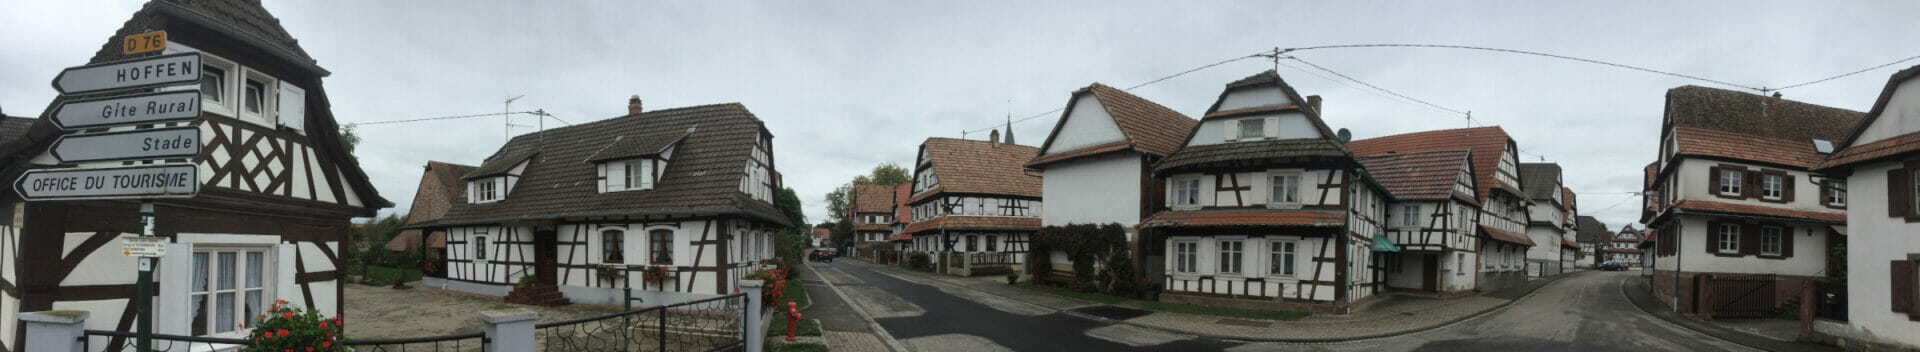 Radtour an der Maginot-Linie in Hunspach mit wunderschönen weißen Fachwerkhäusern.